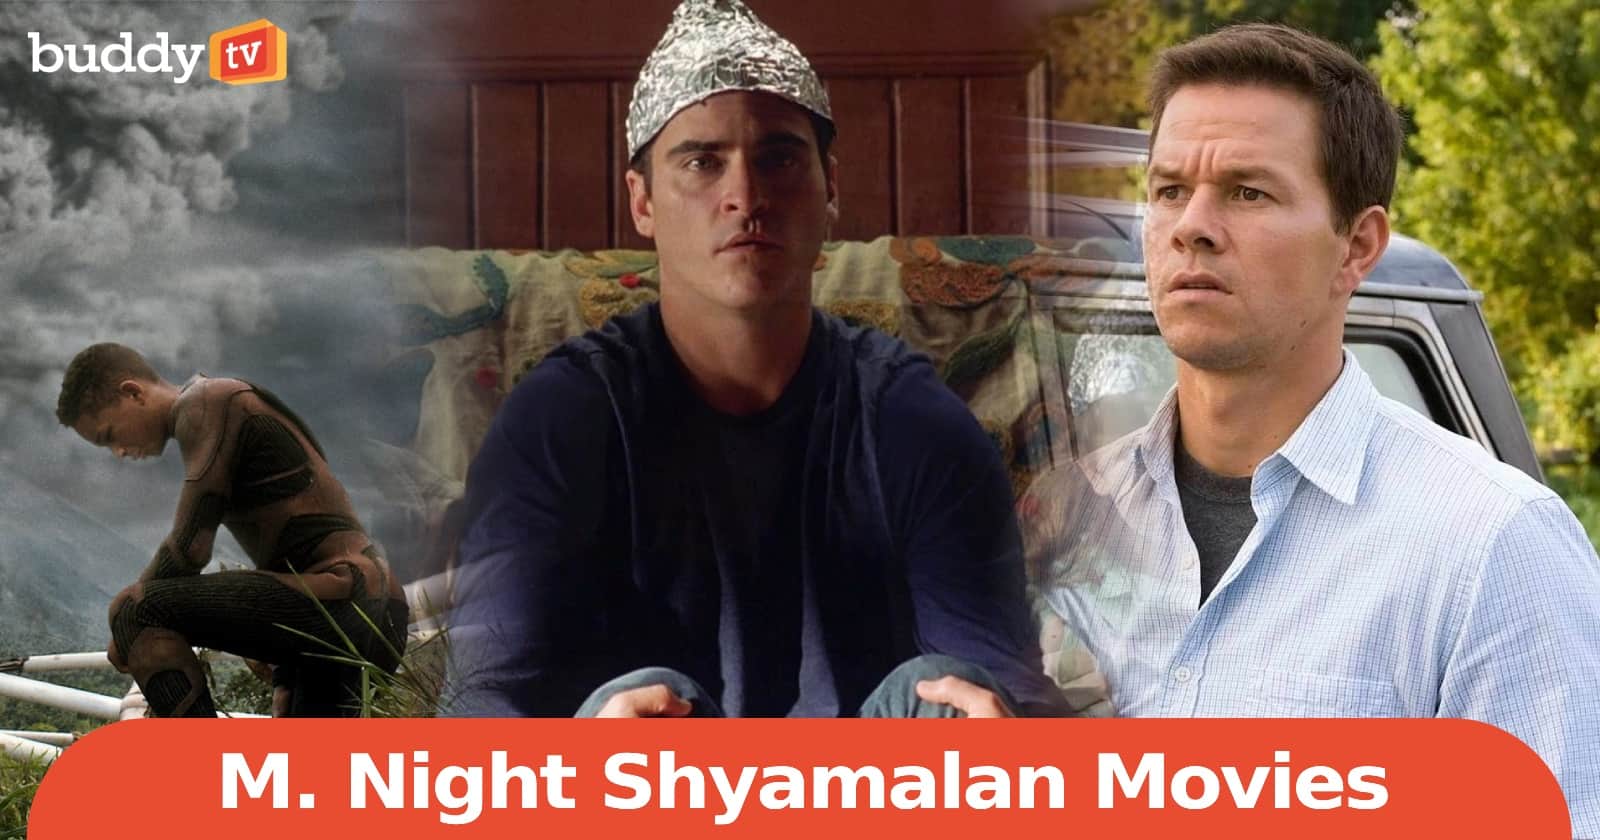 Top 10 Must-Watch M. Night Shyamalan Movies